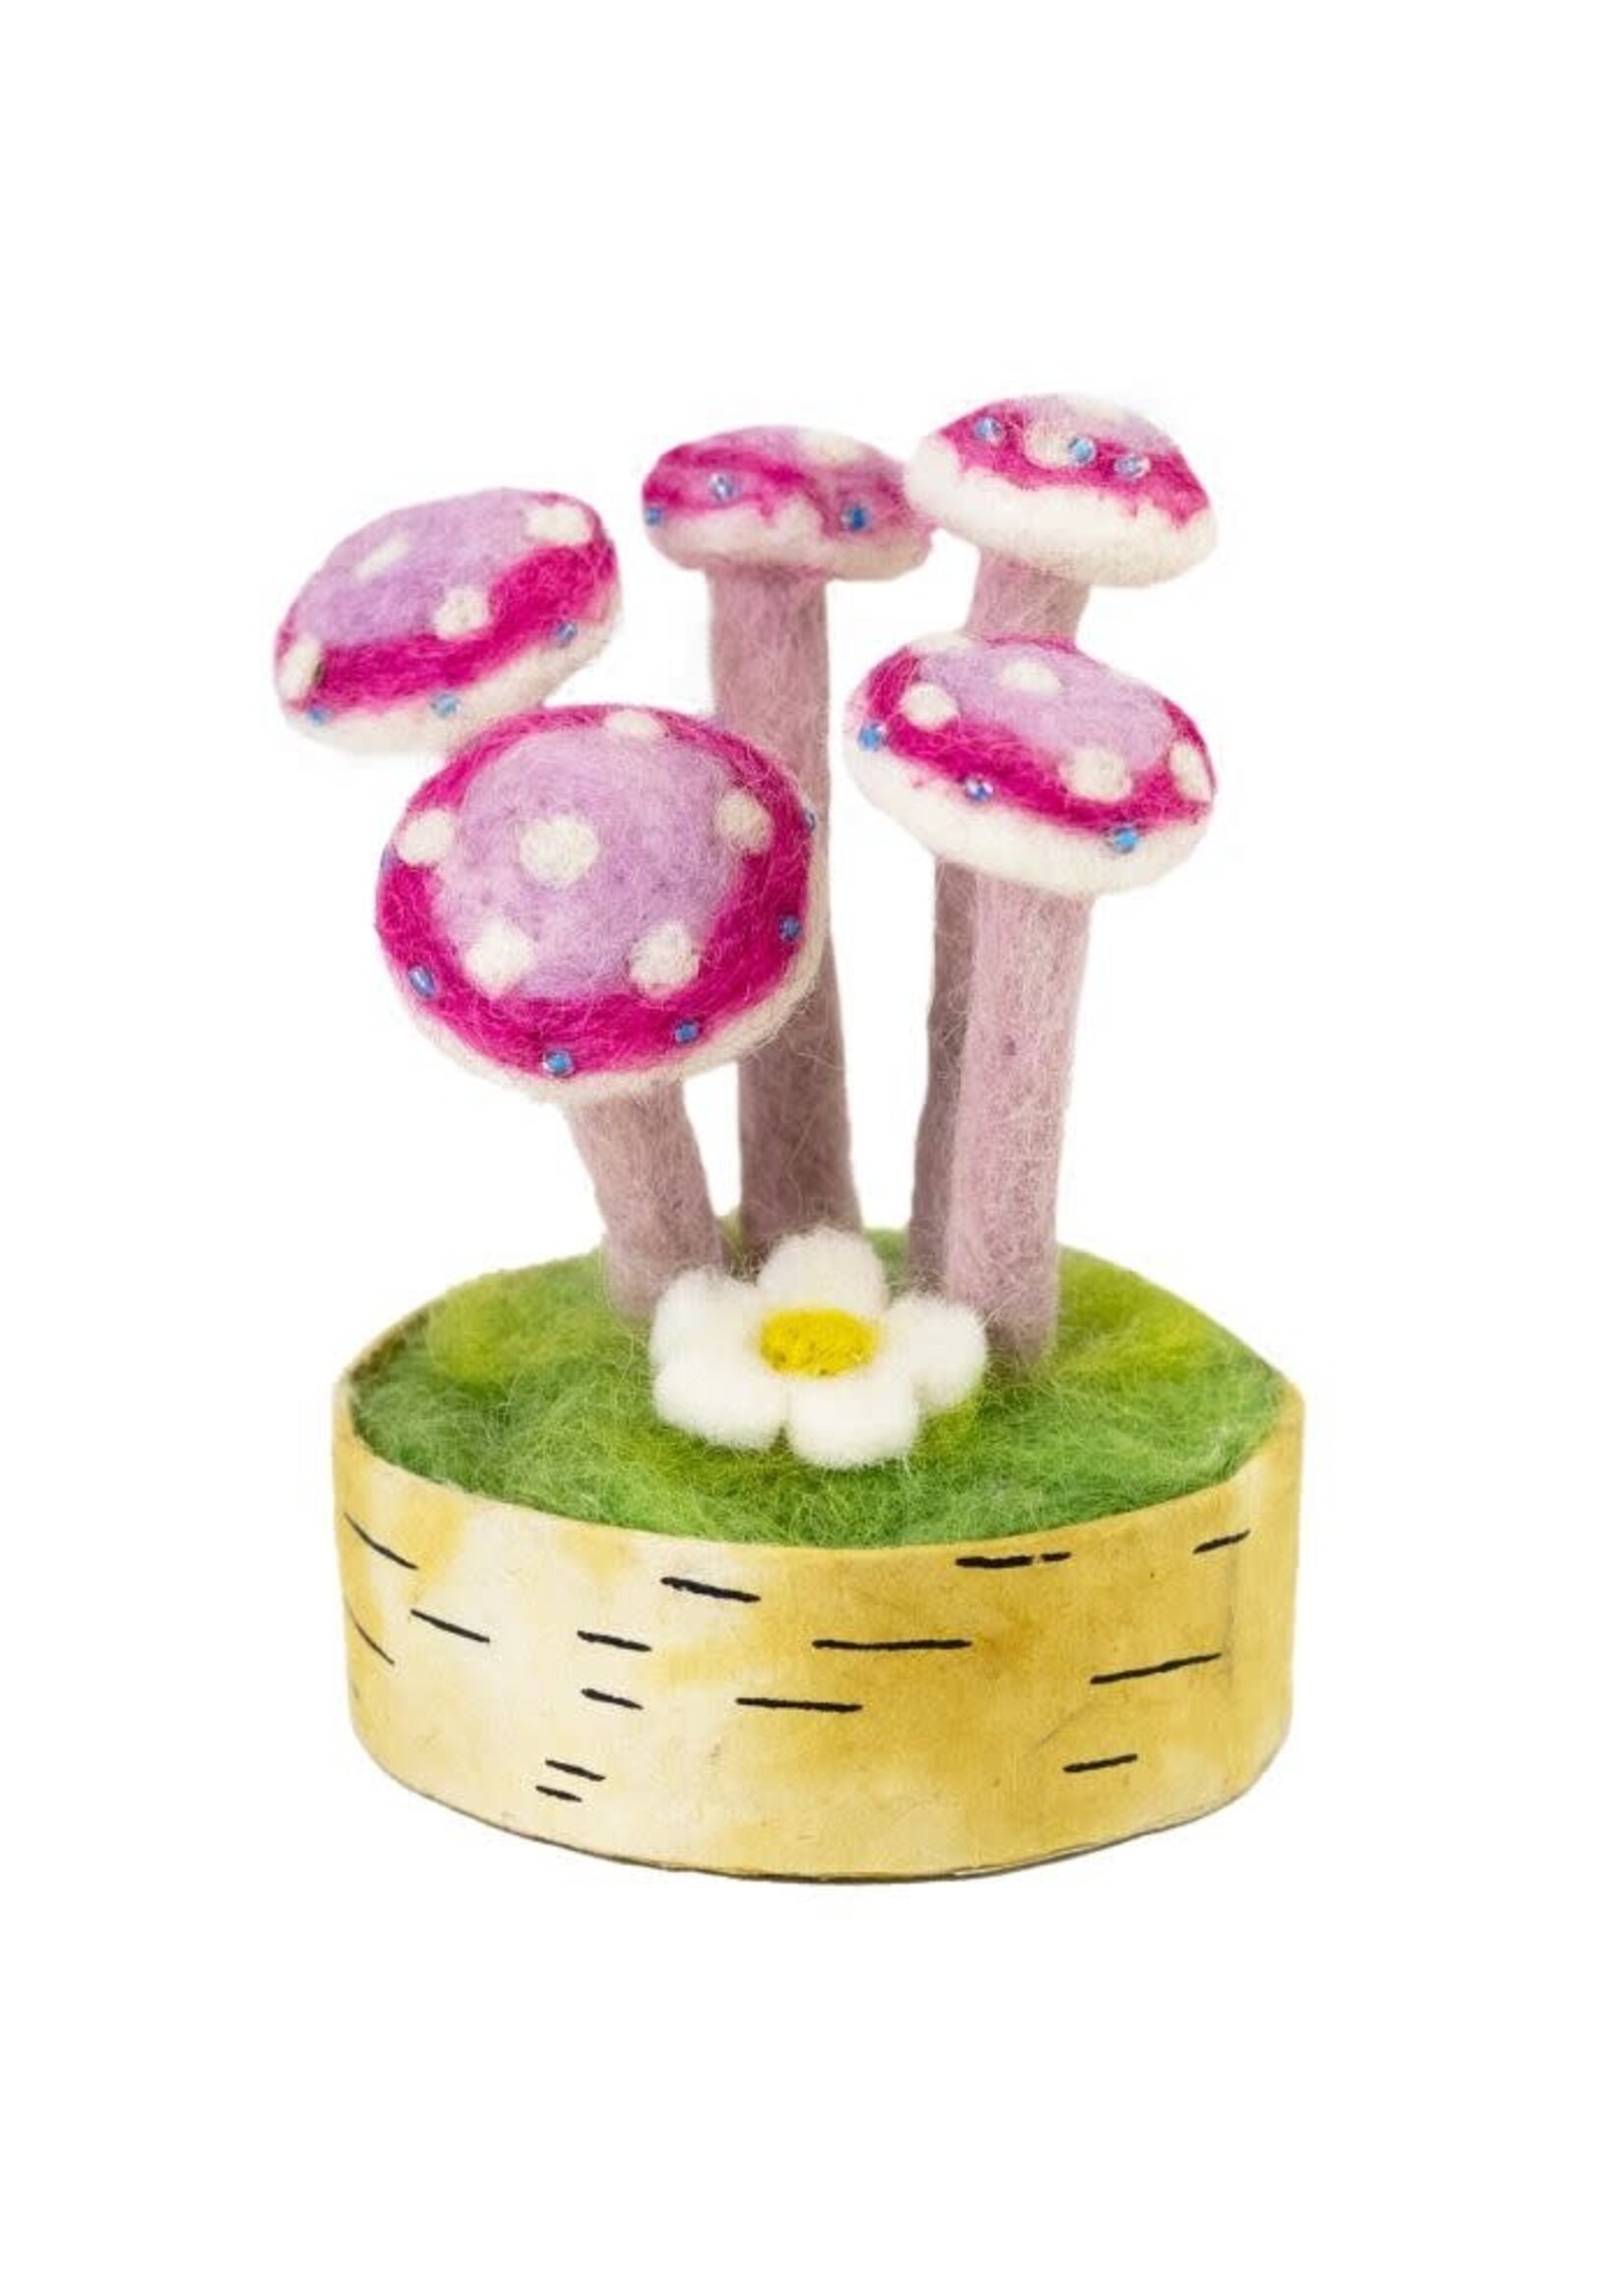 Felt Woodland Mushroom - Pink Lady